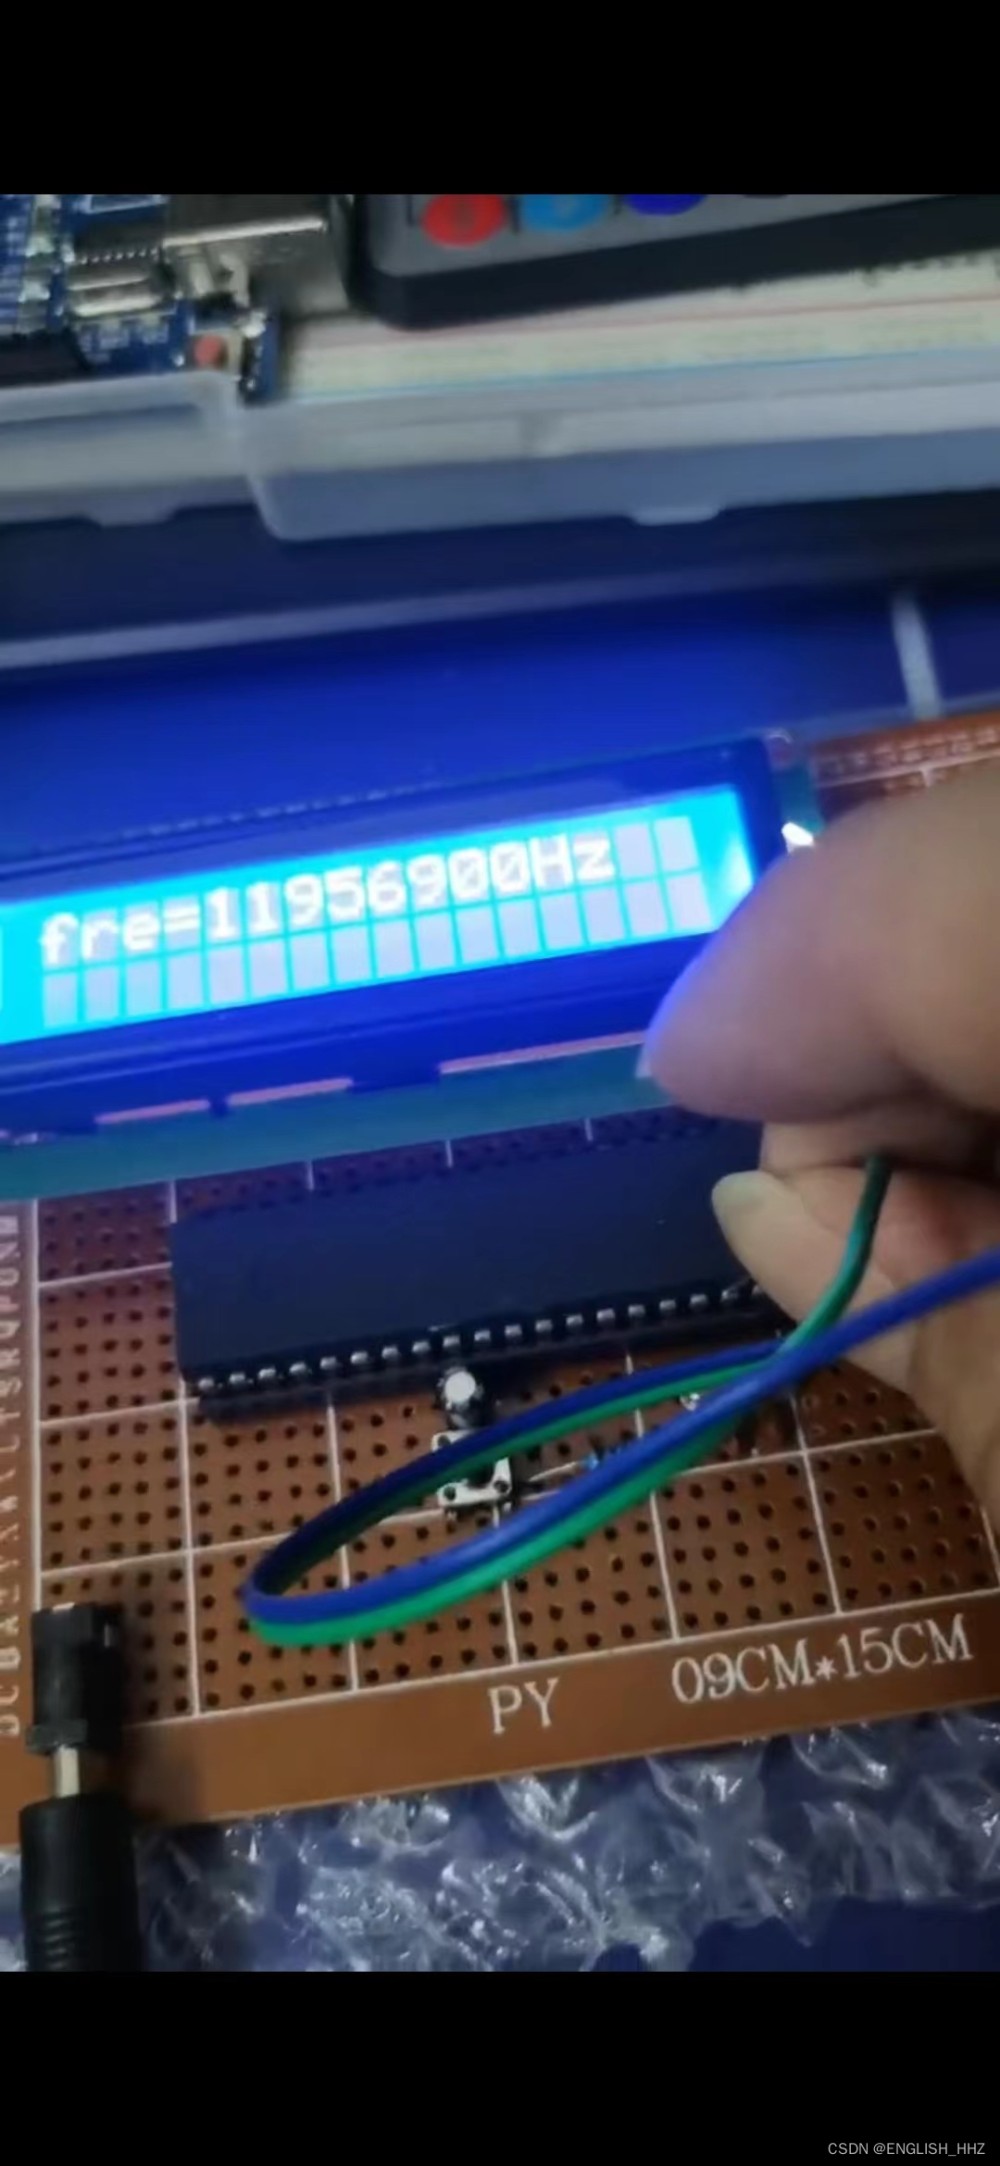 单片机频率测量仪:测量外部信号源的频率,led 或 lcd 显示屏显示,51单片机,51单片机,单片机,嵌入式硬件